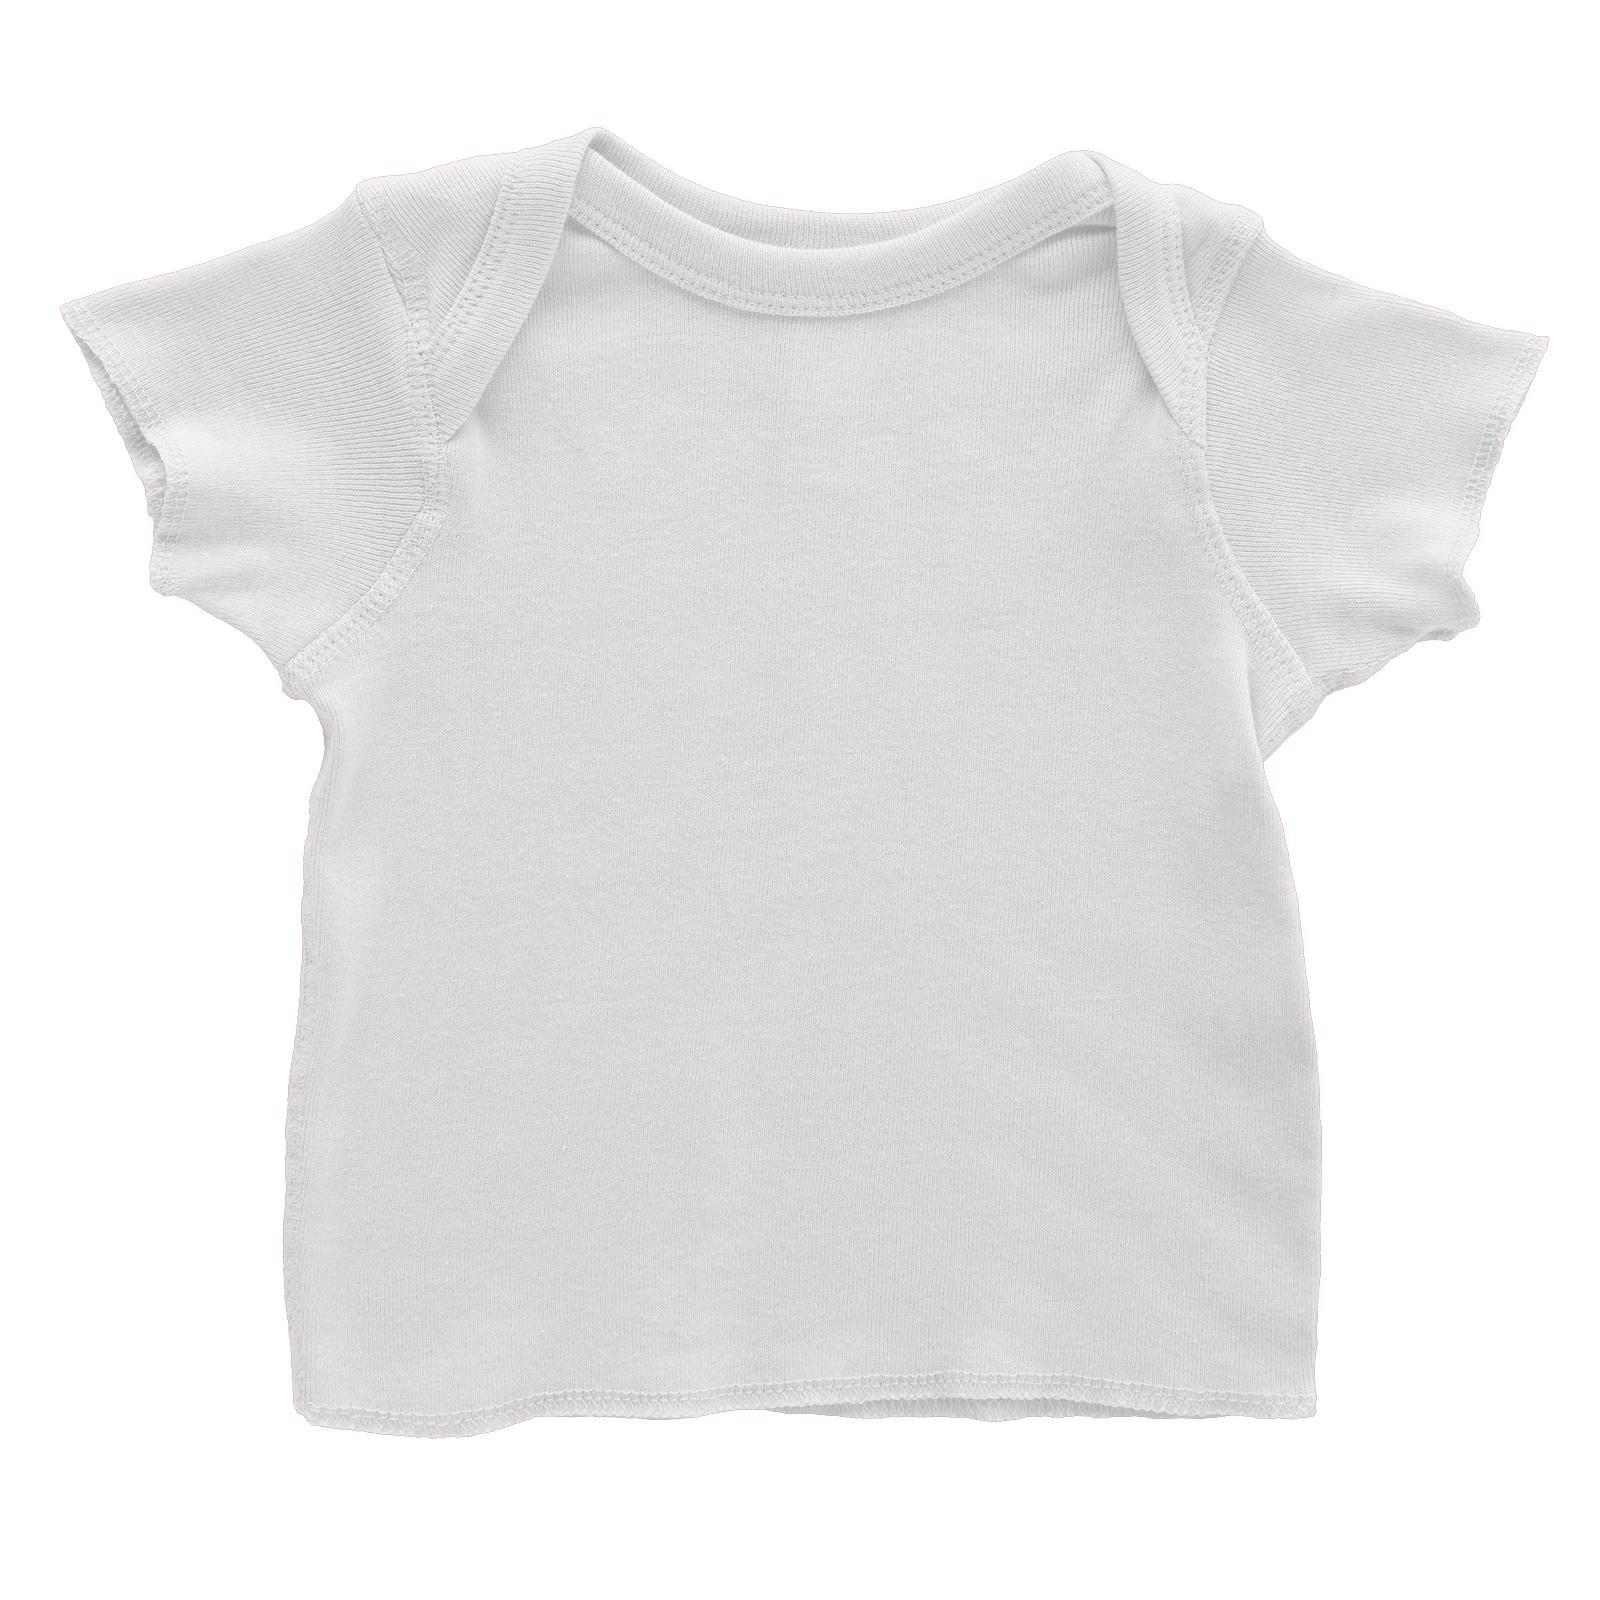 Blank Baby T-Shirt Baby T-Shirt